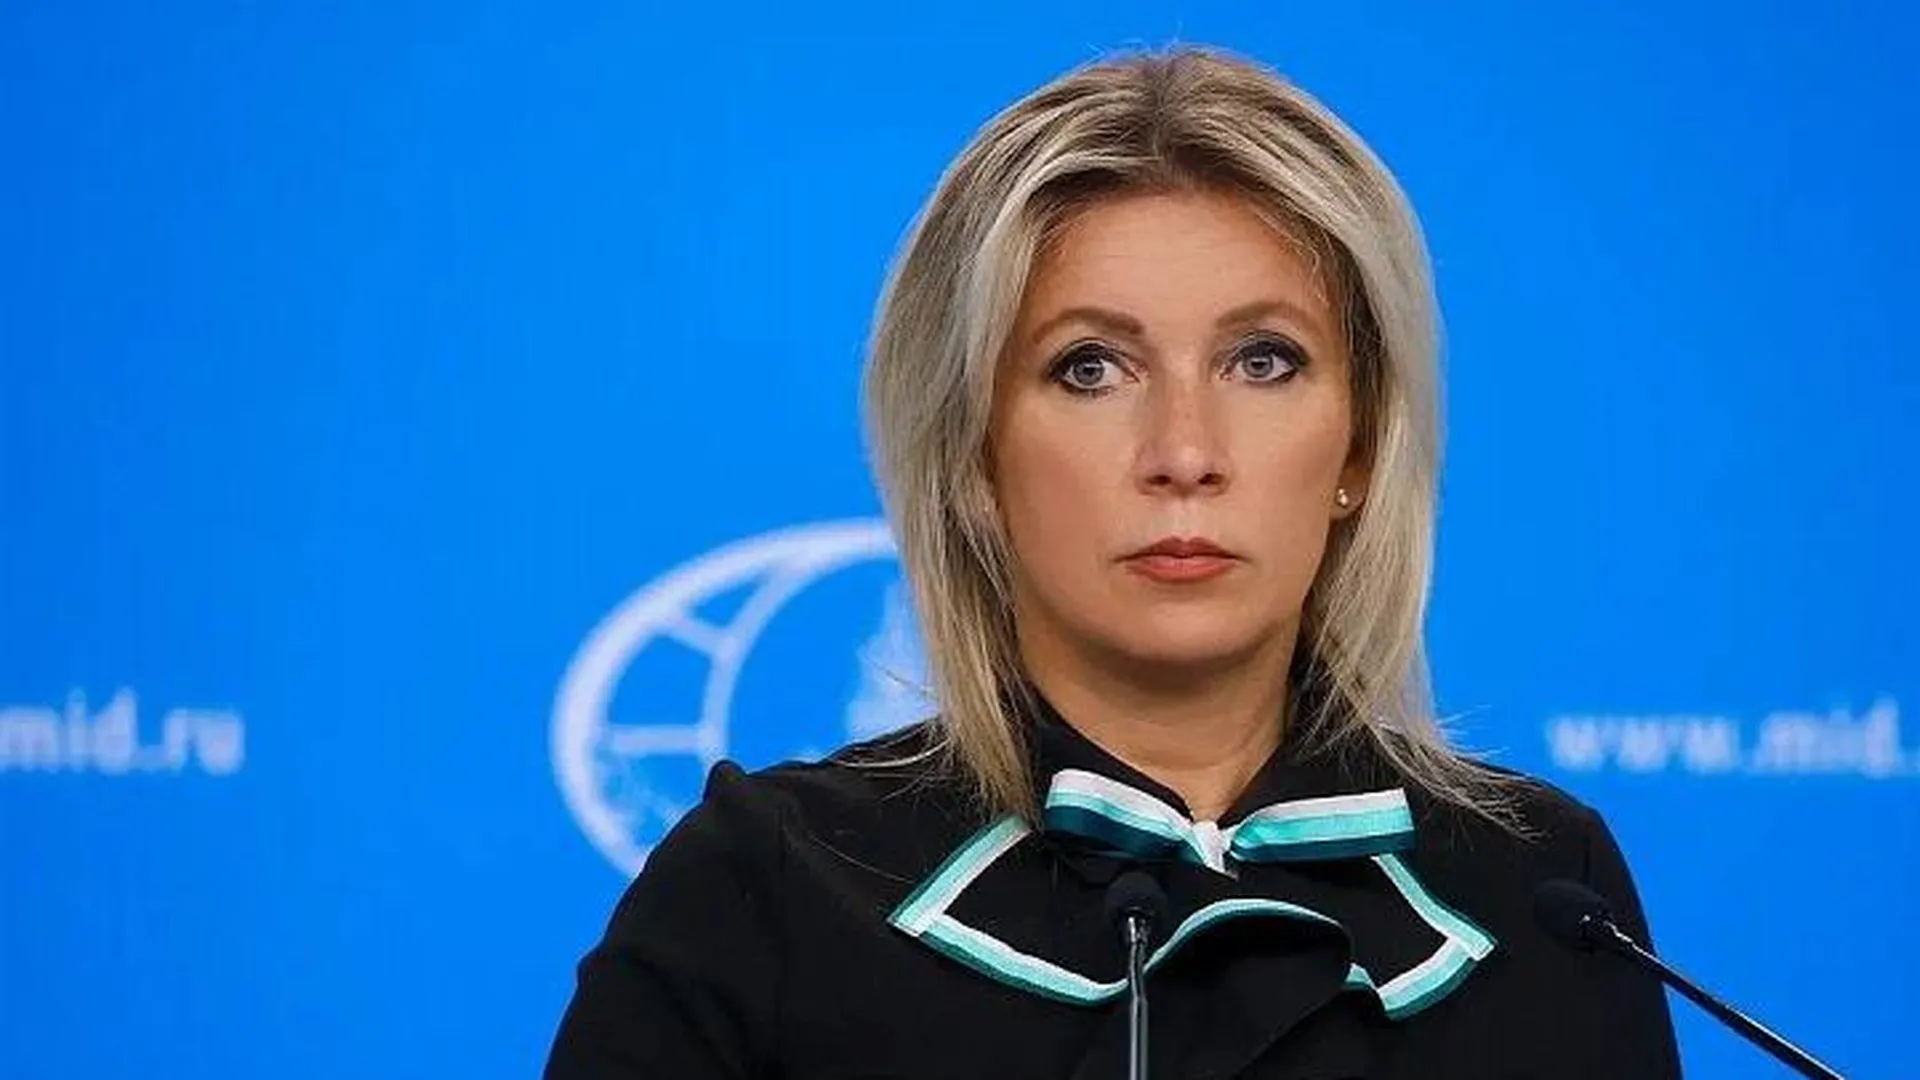 Захарова призвала главу ЮНЕСКО вернуть зарплату из-за замалчивания убийства военкора